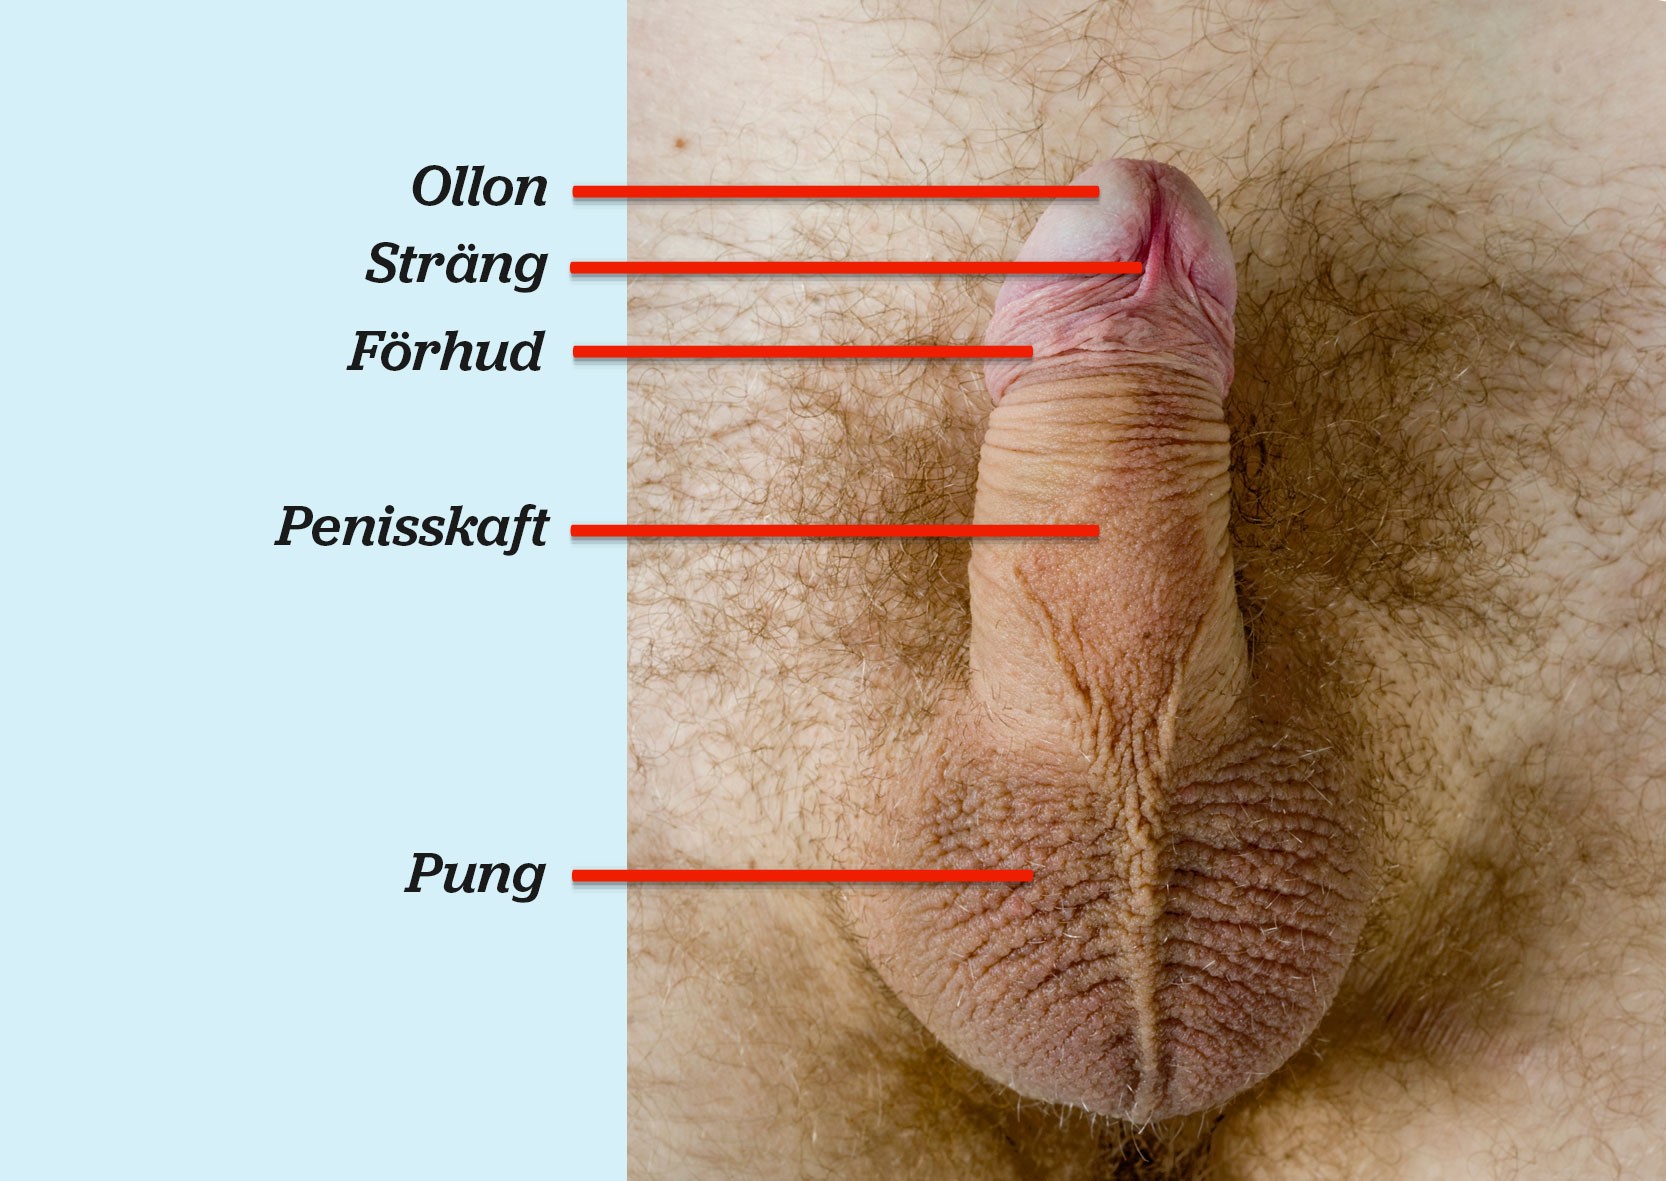 Fotografi av en penis underifrån med ollon, sträng, förhud, penisskaft och pung utmärkt.